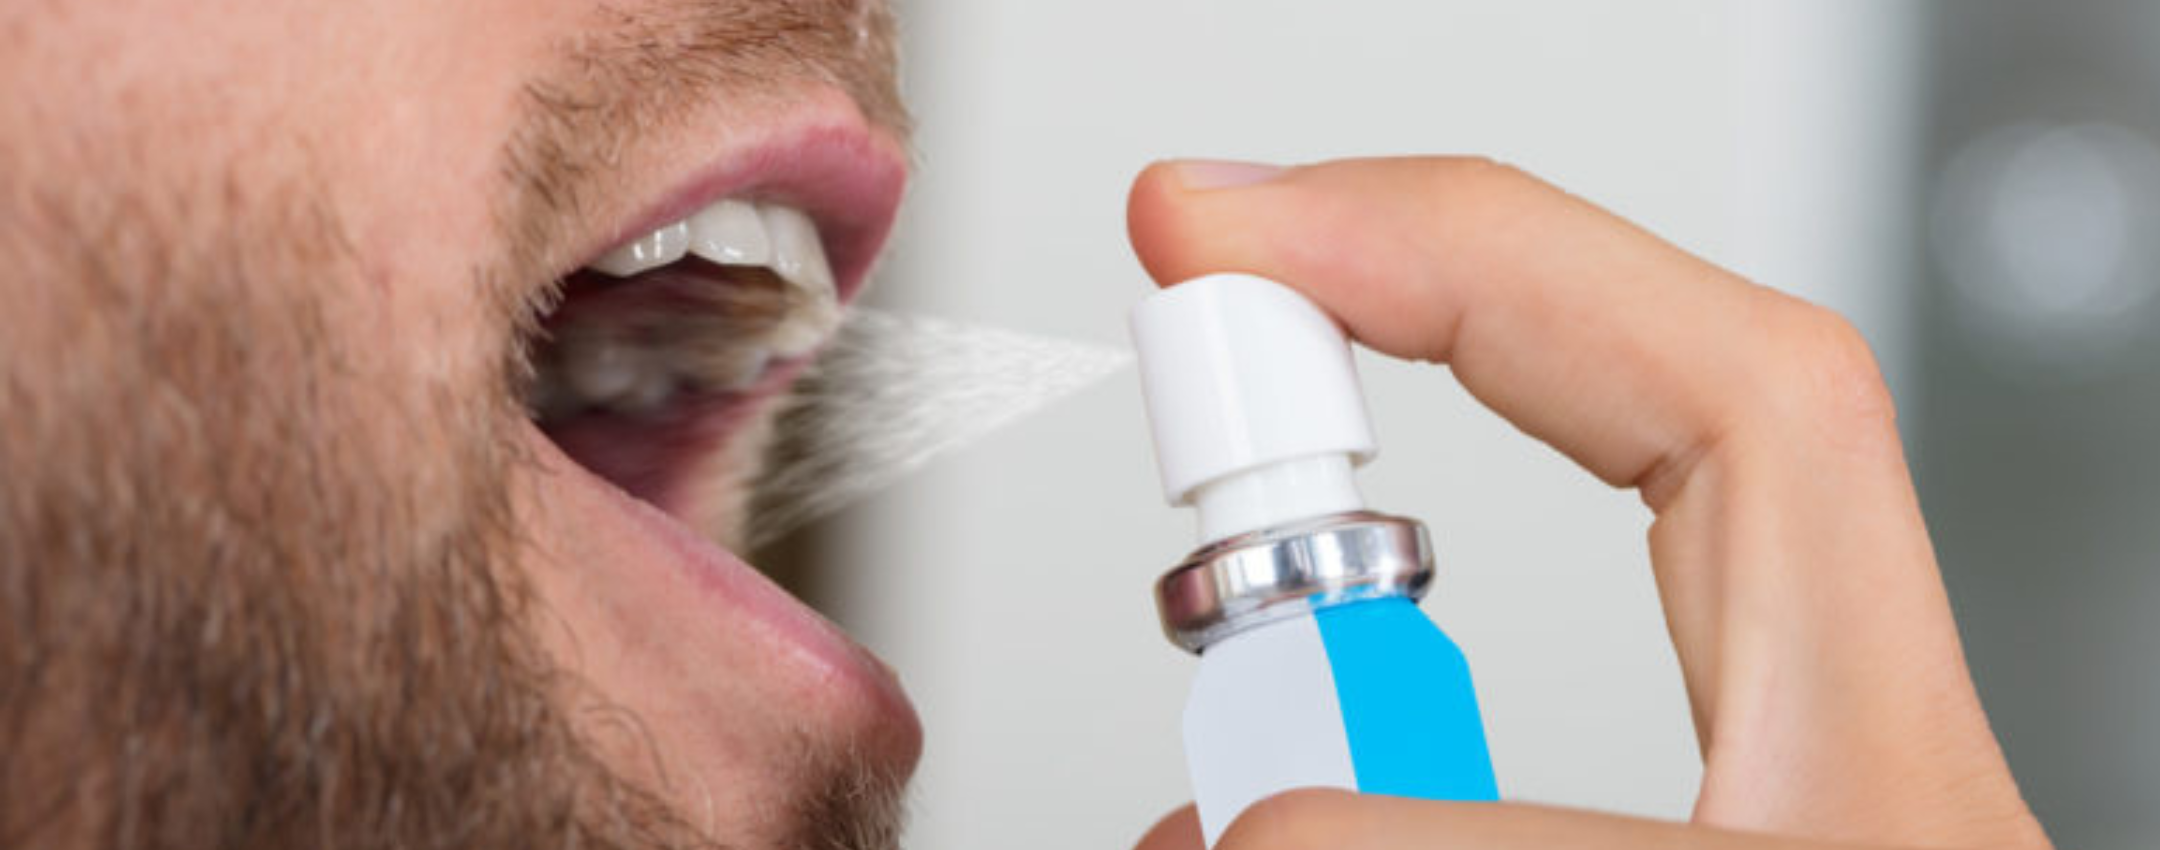 Spray de Tadalafila para tratamento da Disfunção Erétil